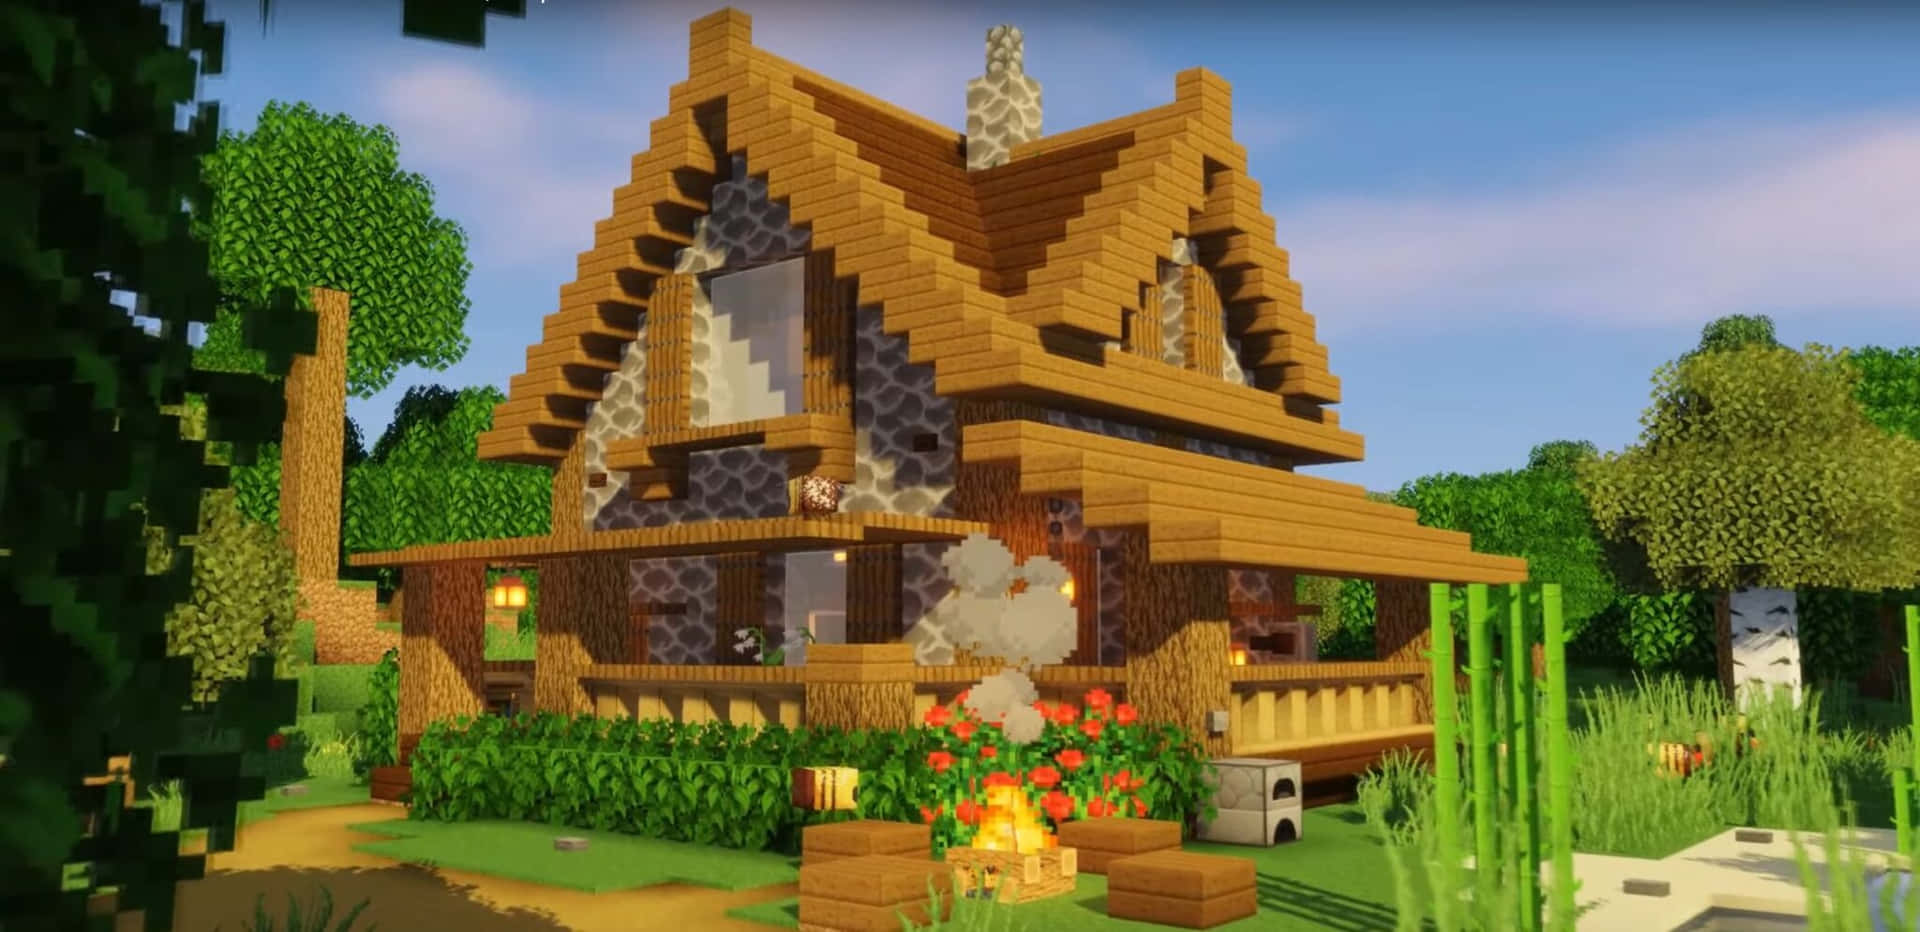 Unavista Spettacolare Di Un Villaggio Di Case Tradizionali Di Minecraft